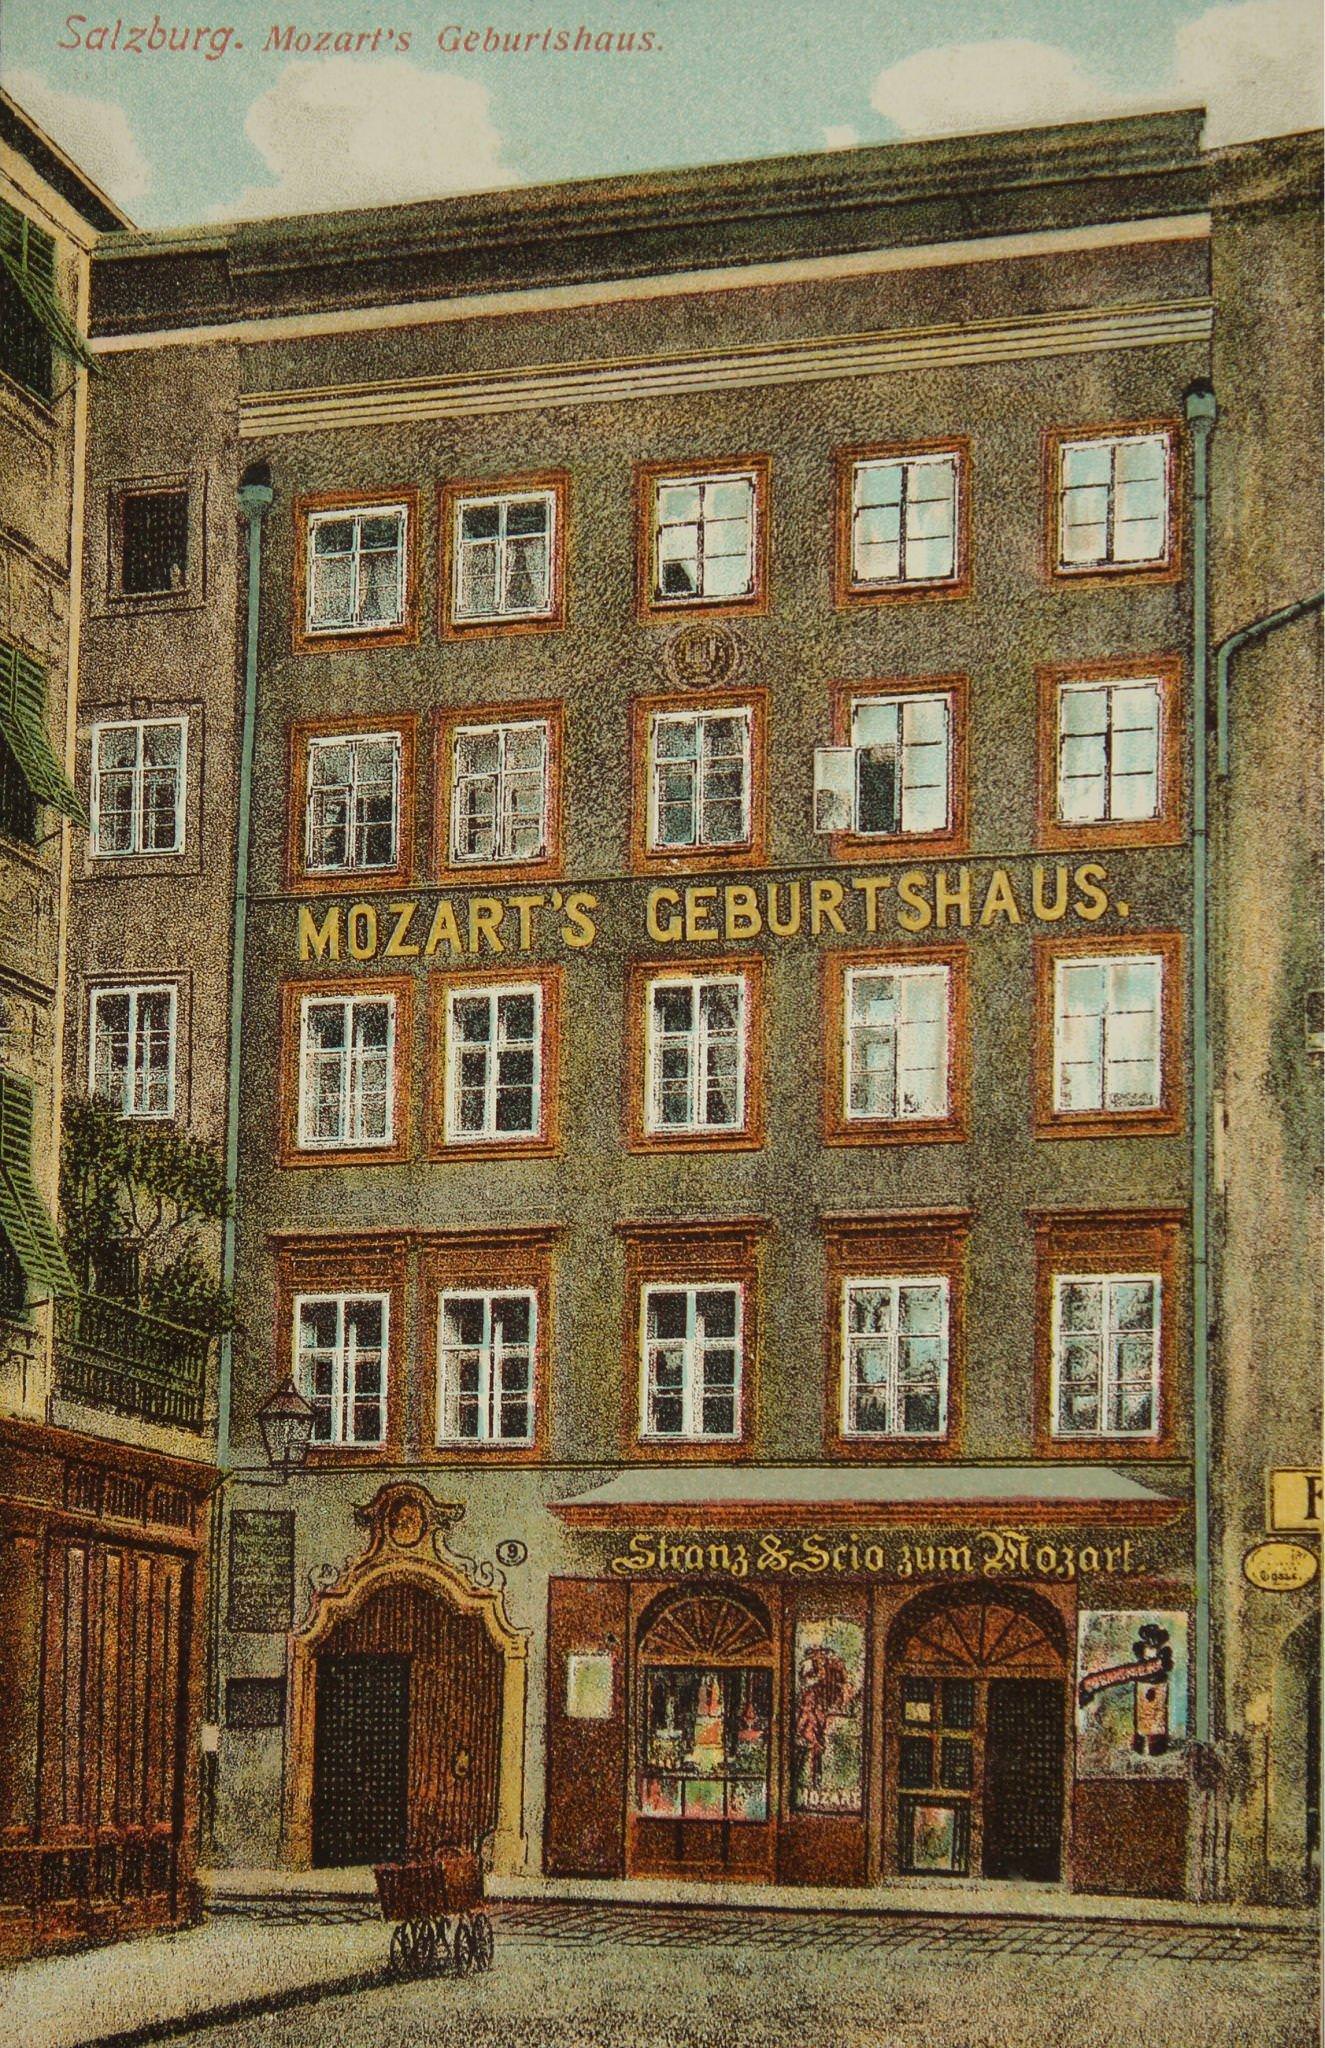 Mozart's birthplace in Salzburg, around 1905.